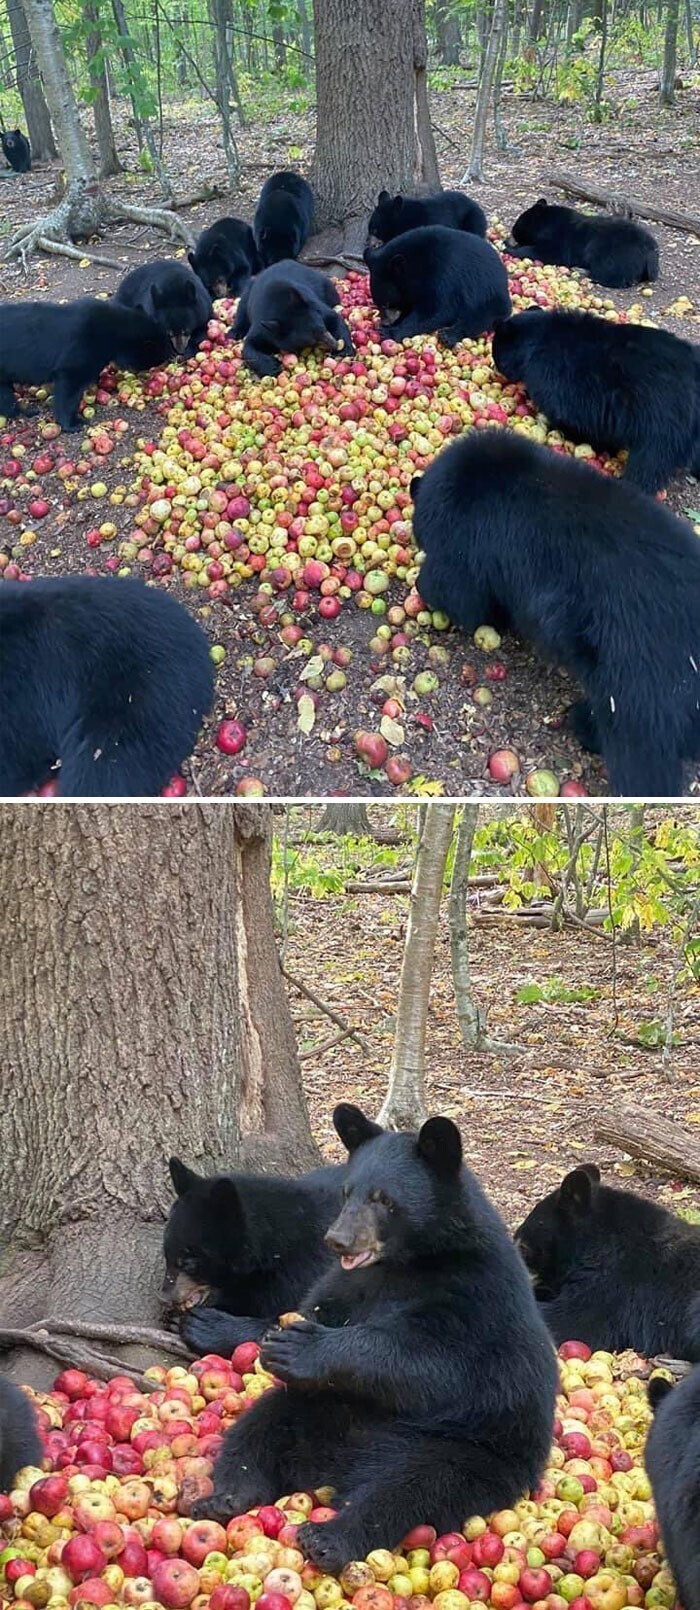 Просто мишки, которые наслаждаются яблочками в лесу